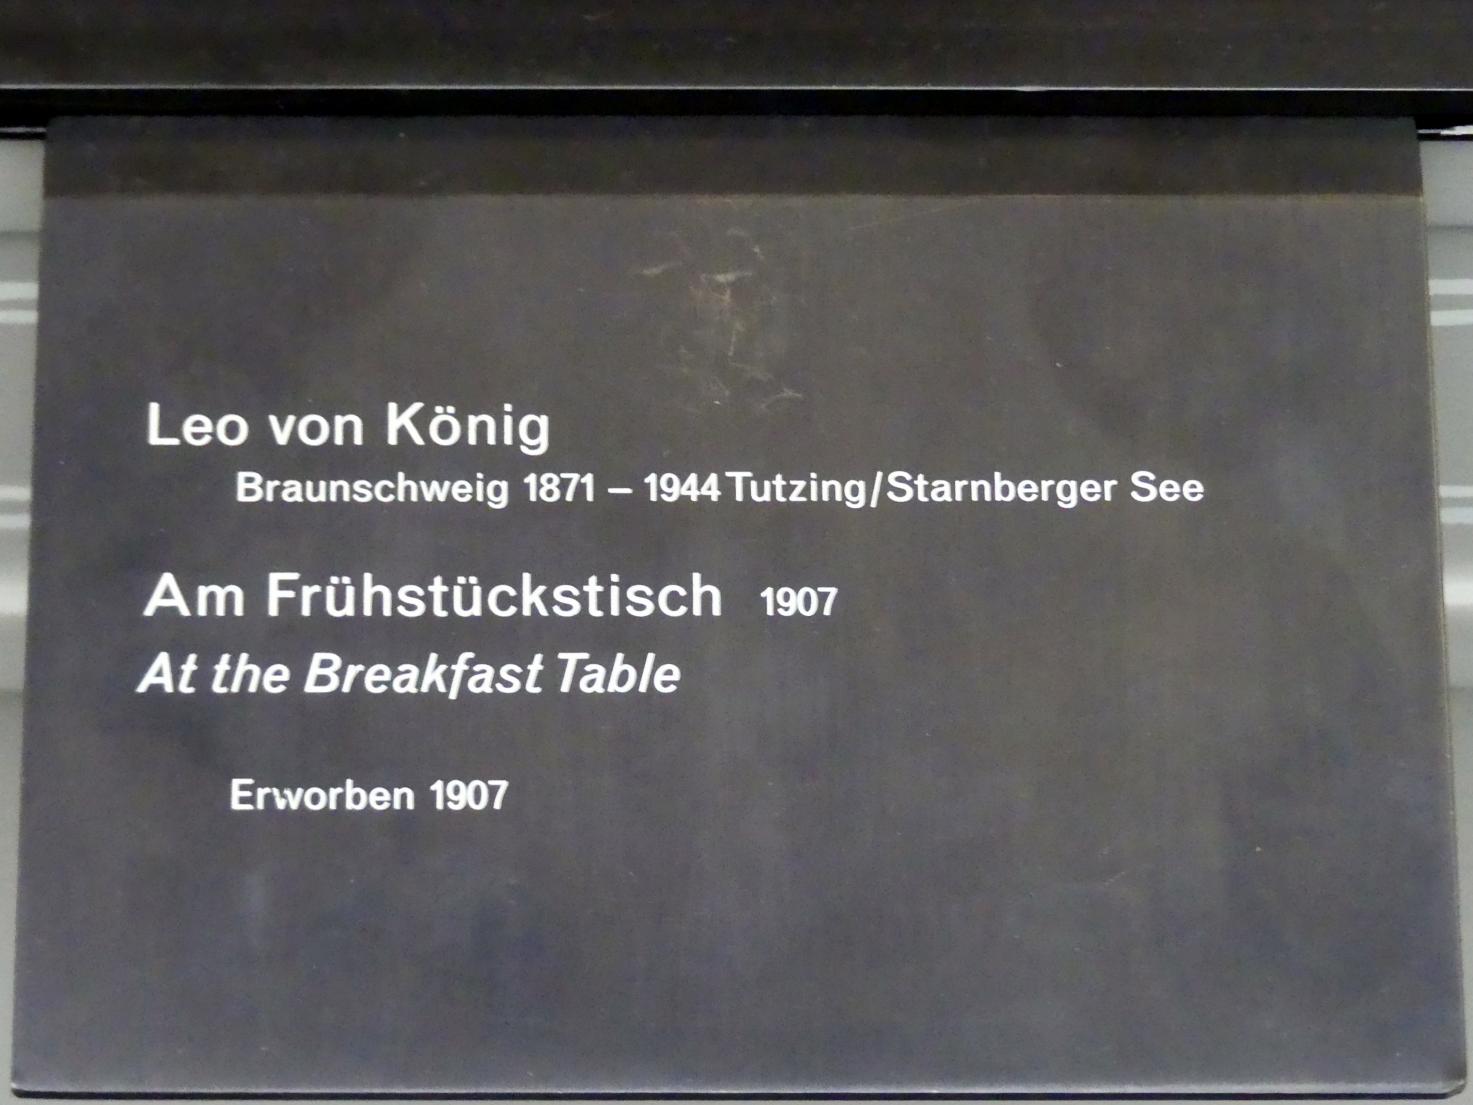 Leo von König (1907), Am Frühstückstisch, Berlin, Alte Nationalgalerie, Saal 116, Secessionen und Jahrhundertwende, 1907, Bild 2/2